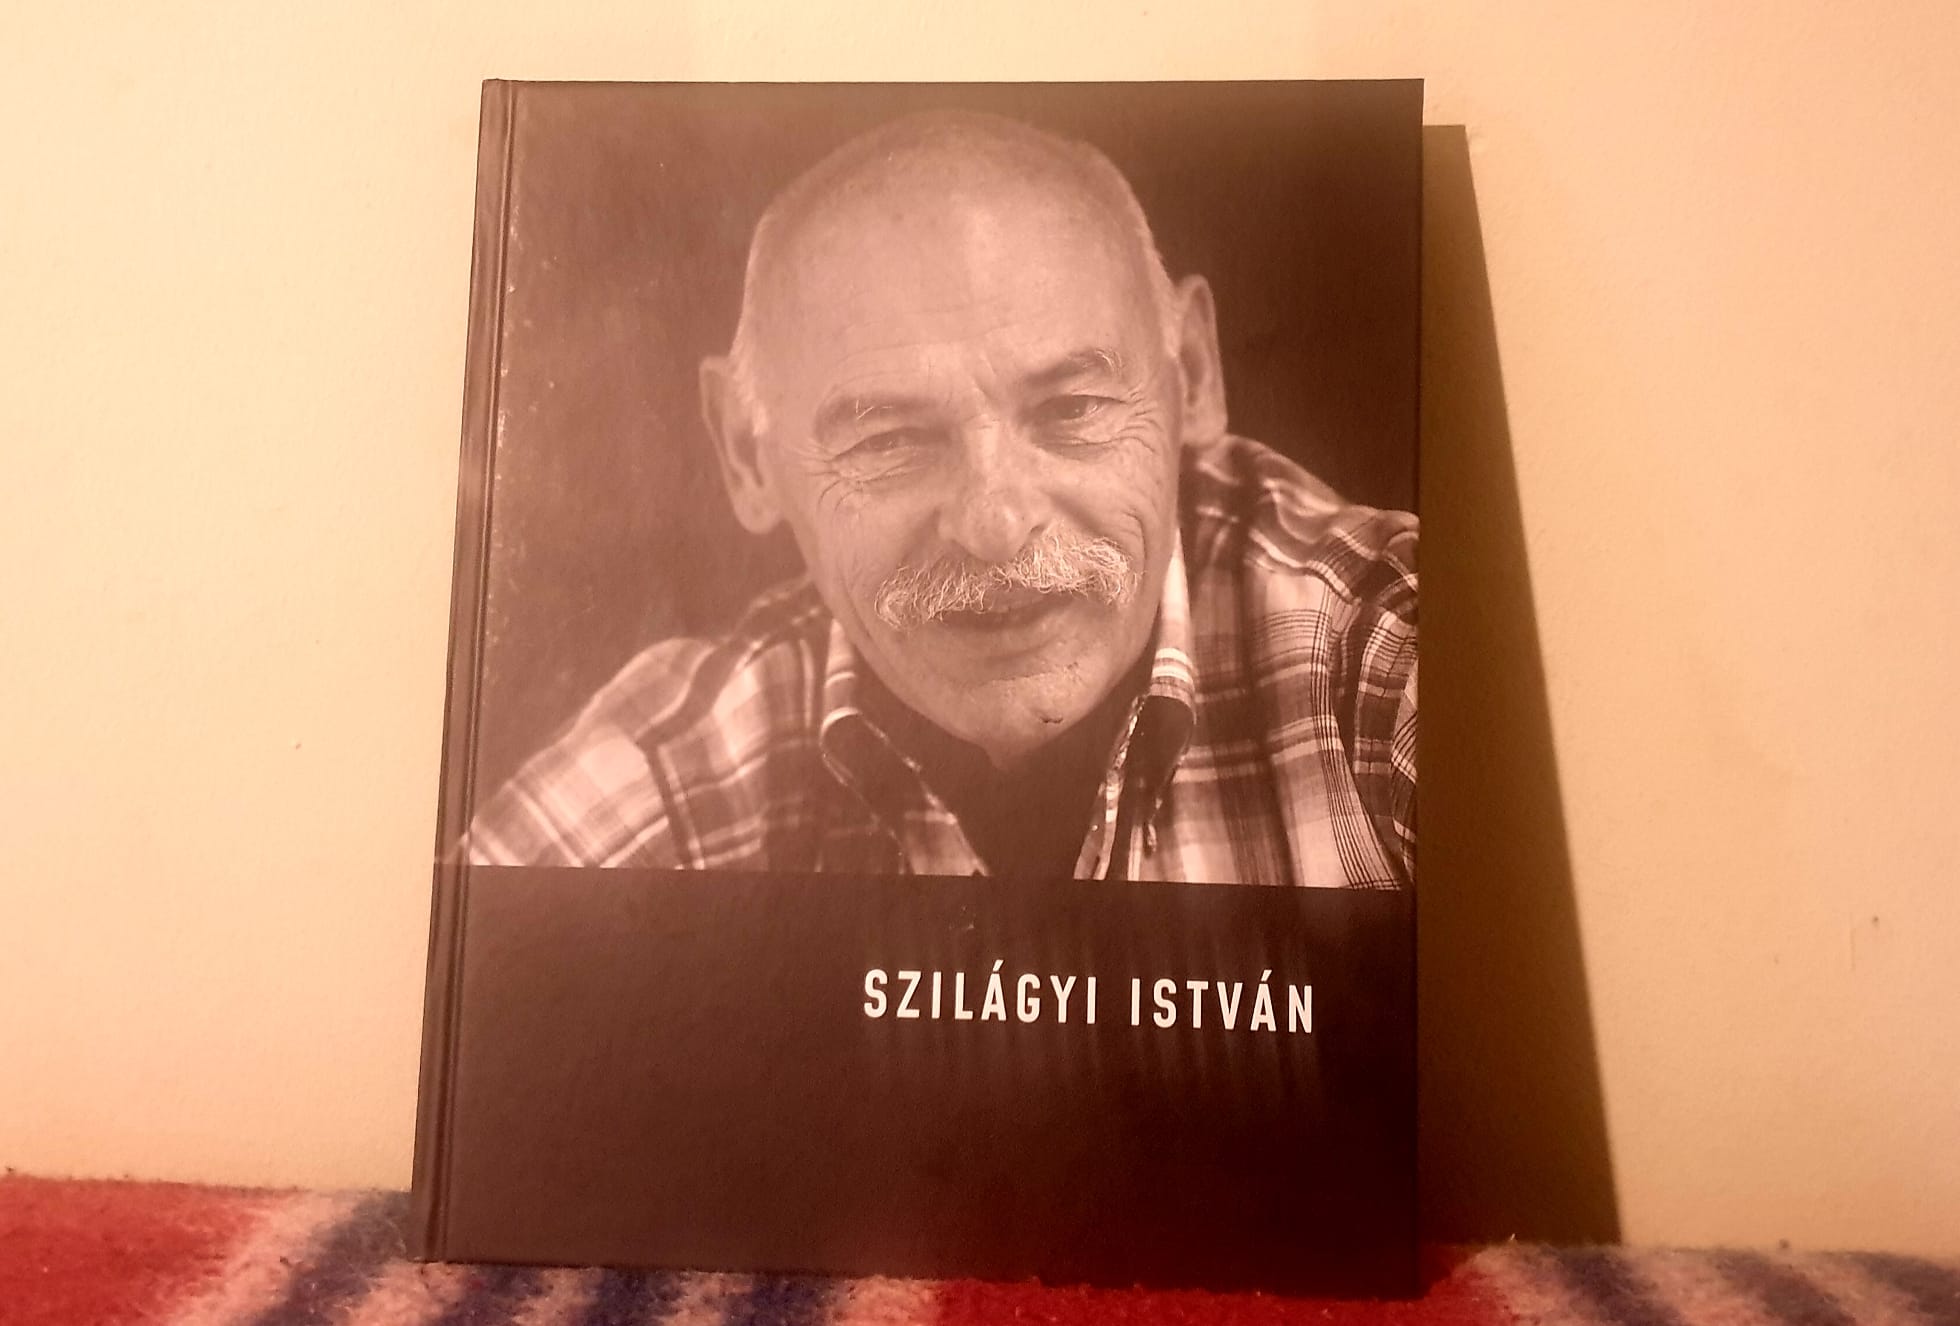 Felfedezni, megfejteni valamit írás közben és olvasáskor – a 84 éves Szilágyi István írót köszöntjük